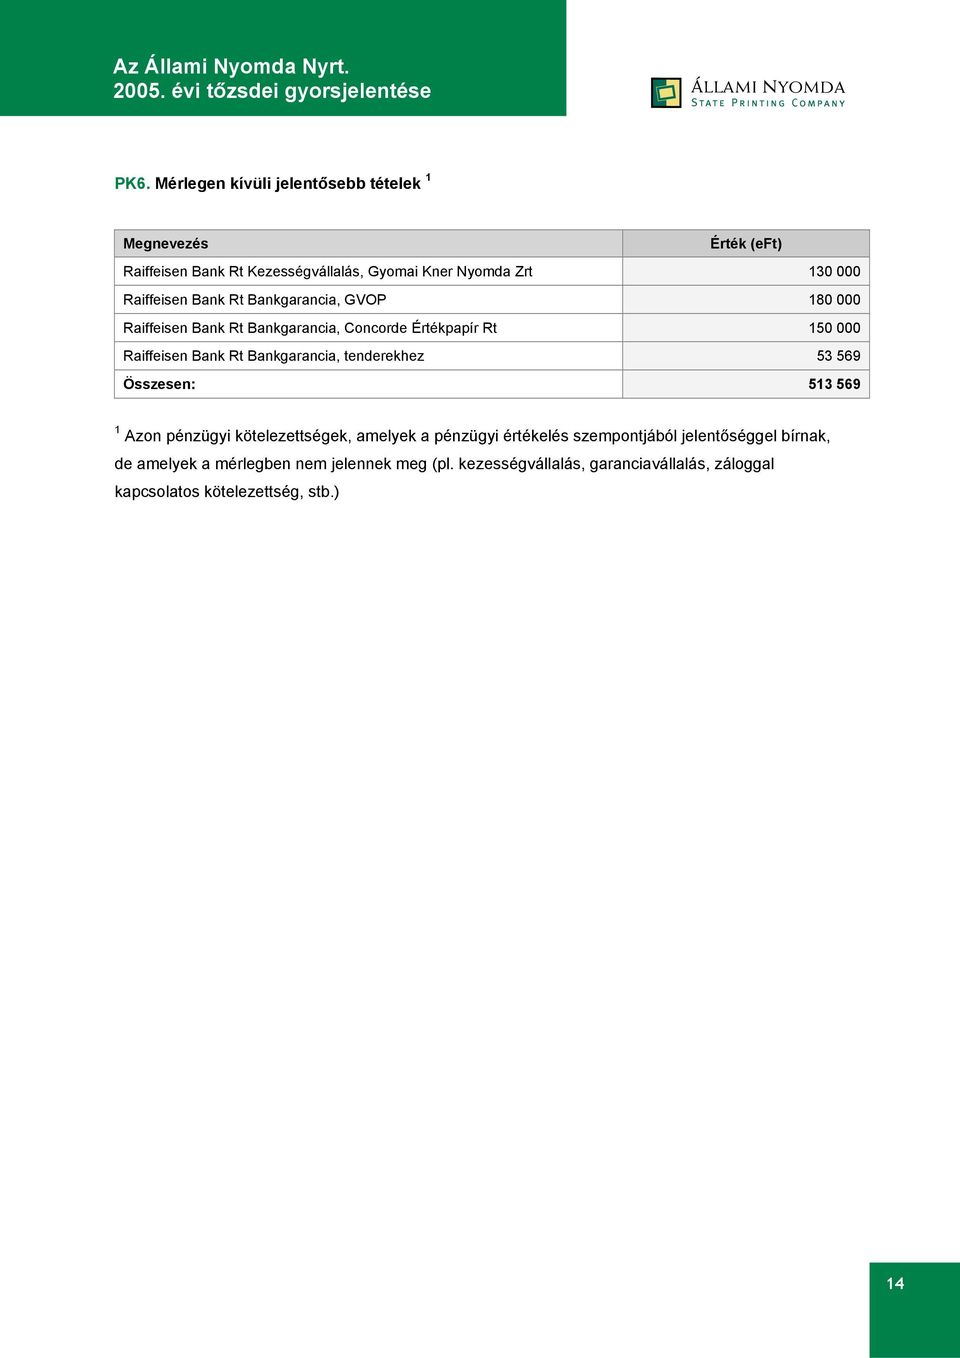 Bankgarancia, tenderekhez 53 569 Összesen: 513 569 1 Azon pénzügyi kötelezettségek, amelyek a pénzügyi értékelés szempontjából